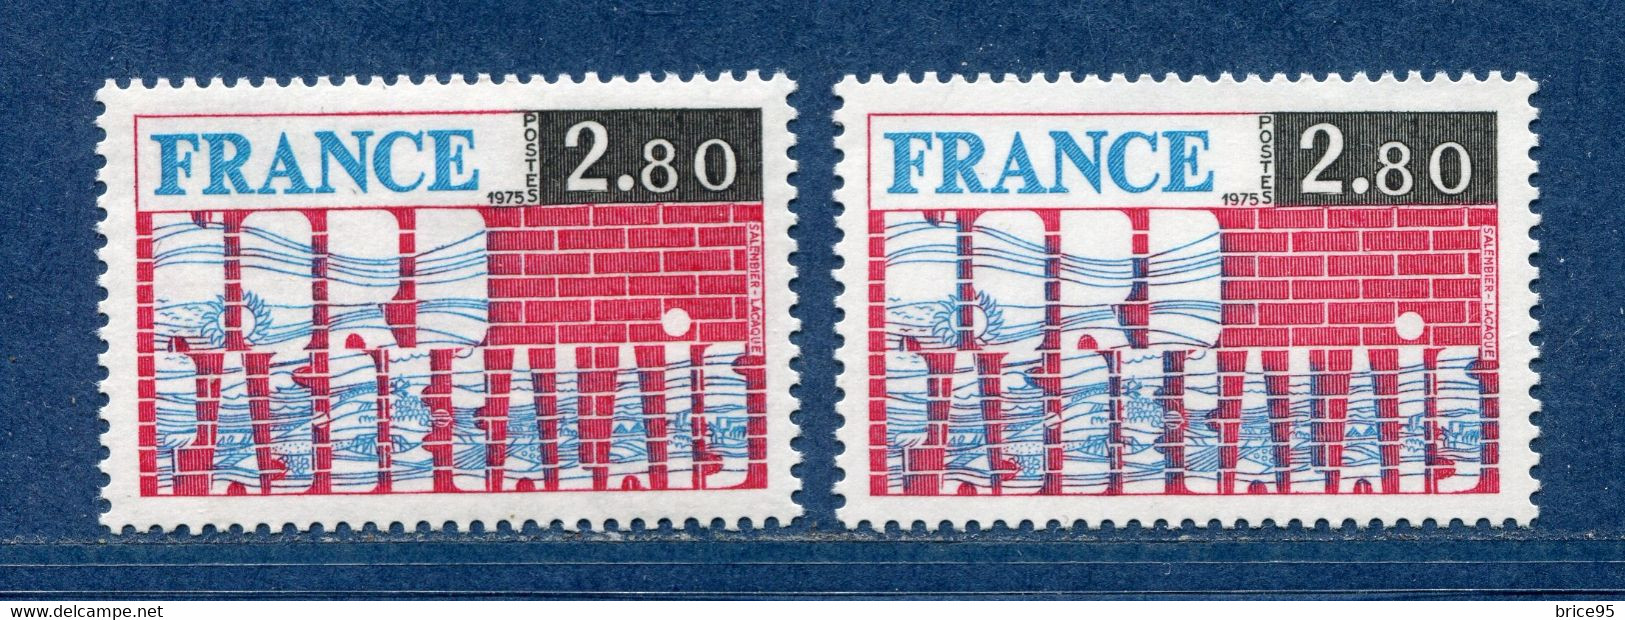 ⭐ France - Variété - YT N° 1852 - Couleurs - Pétouille - Neuf Sans Charnière - 1975 ⭐ - Nuovi